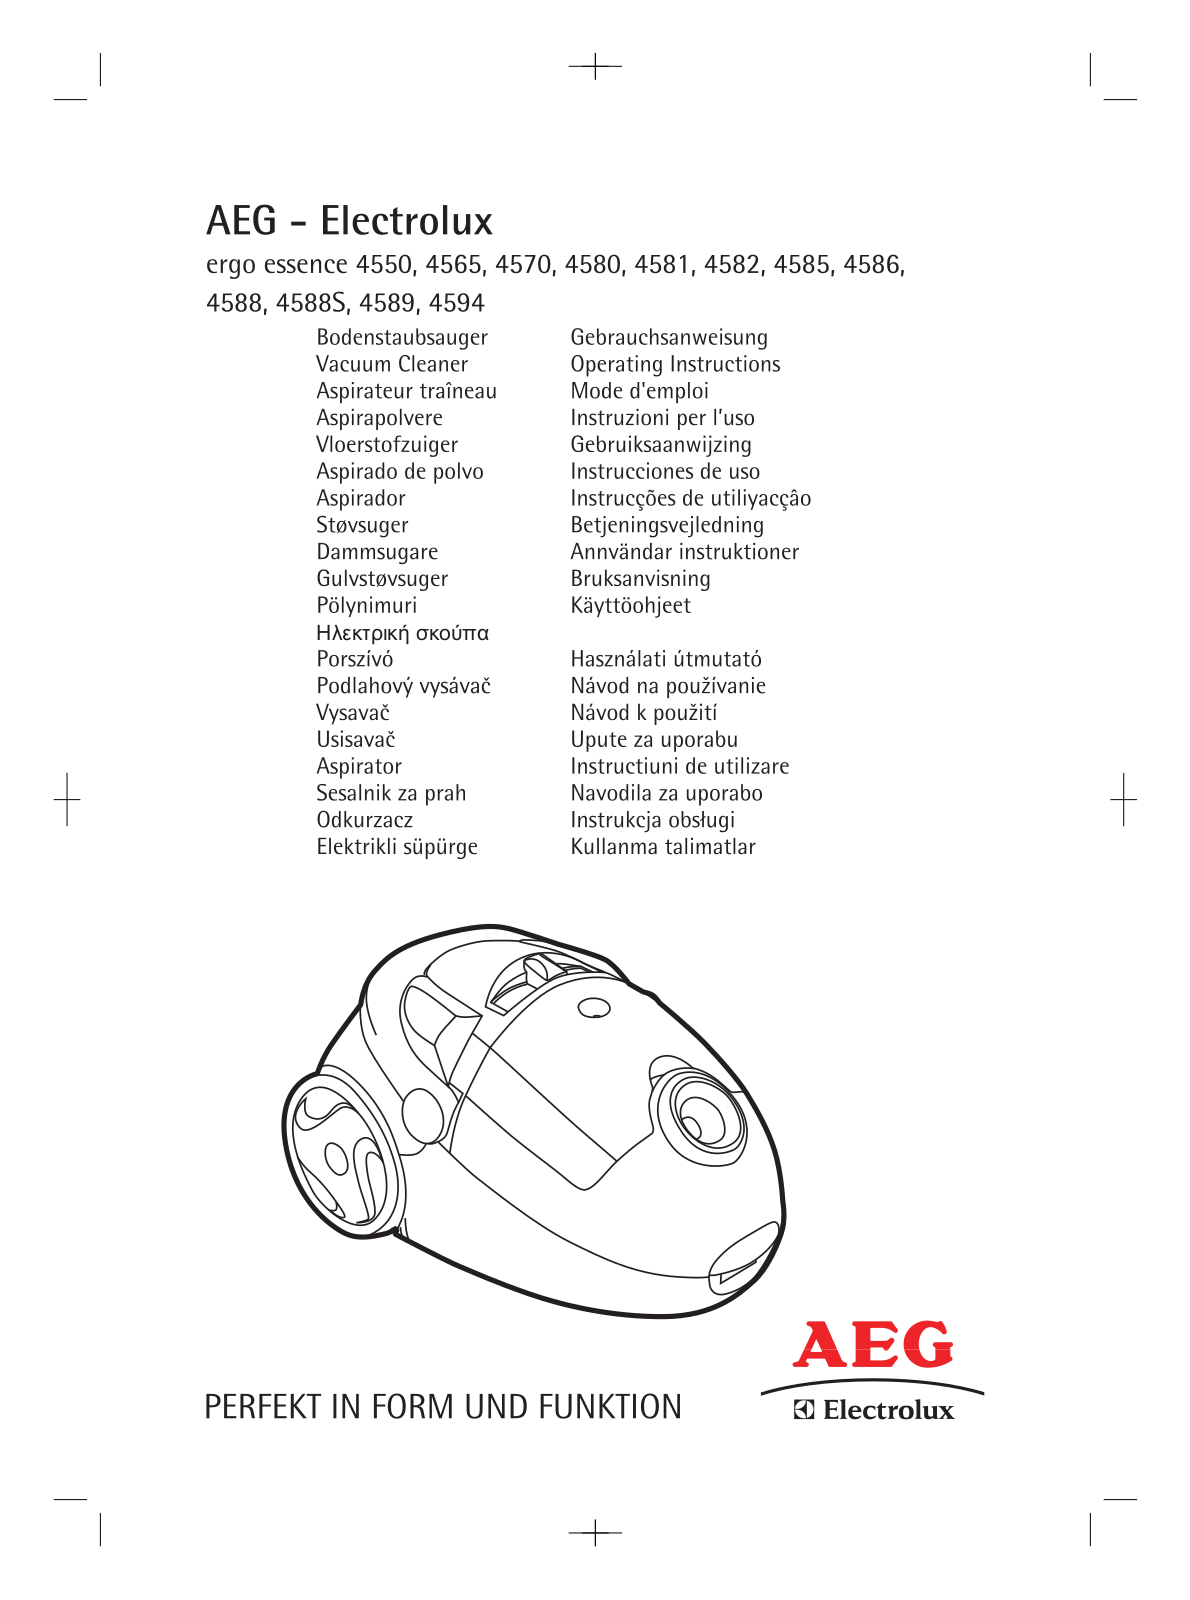 AEG ergo essence 4550, ergo essence 4565, ergo essence 4570, ergo essence 4580, ergo essence 4581 Manual